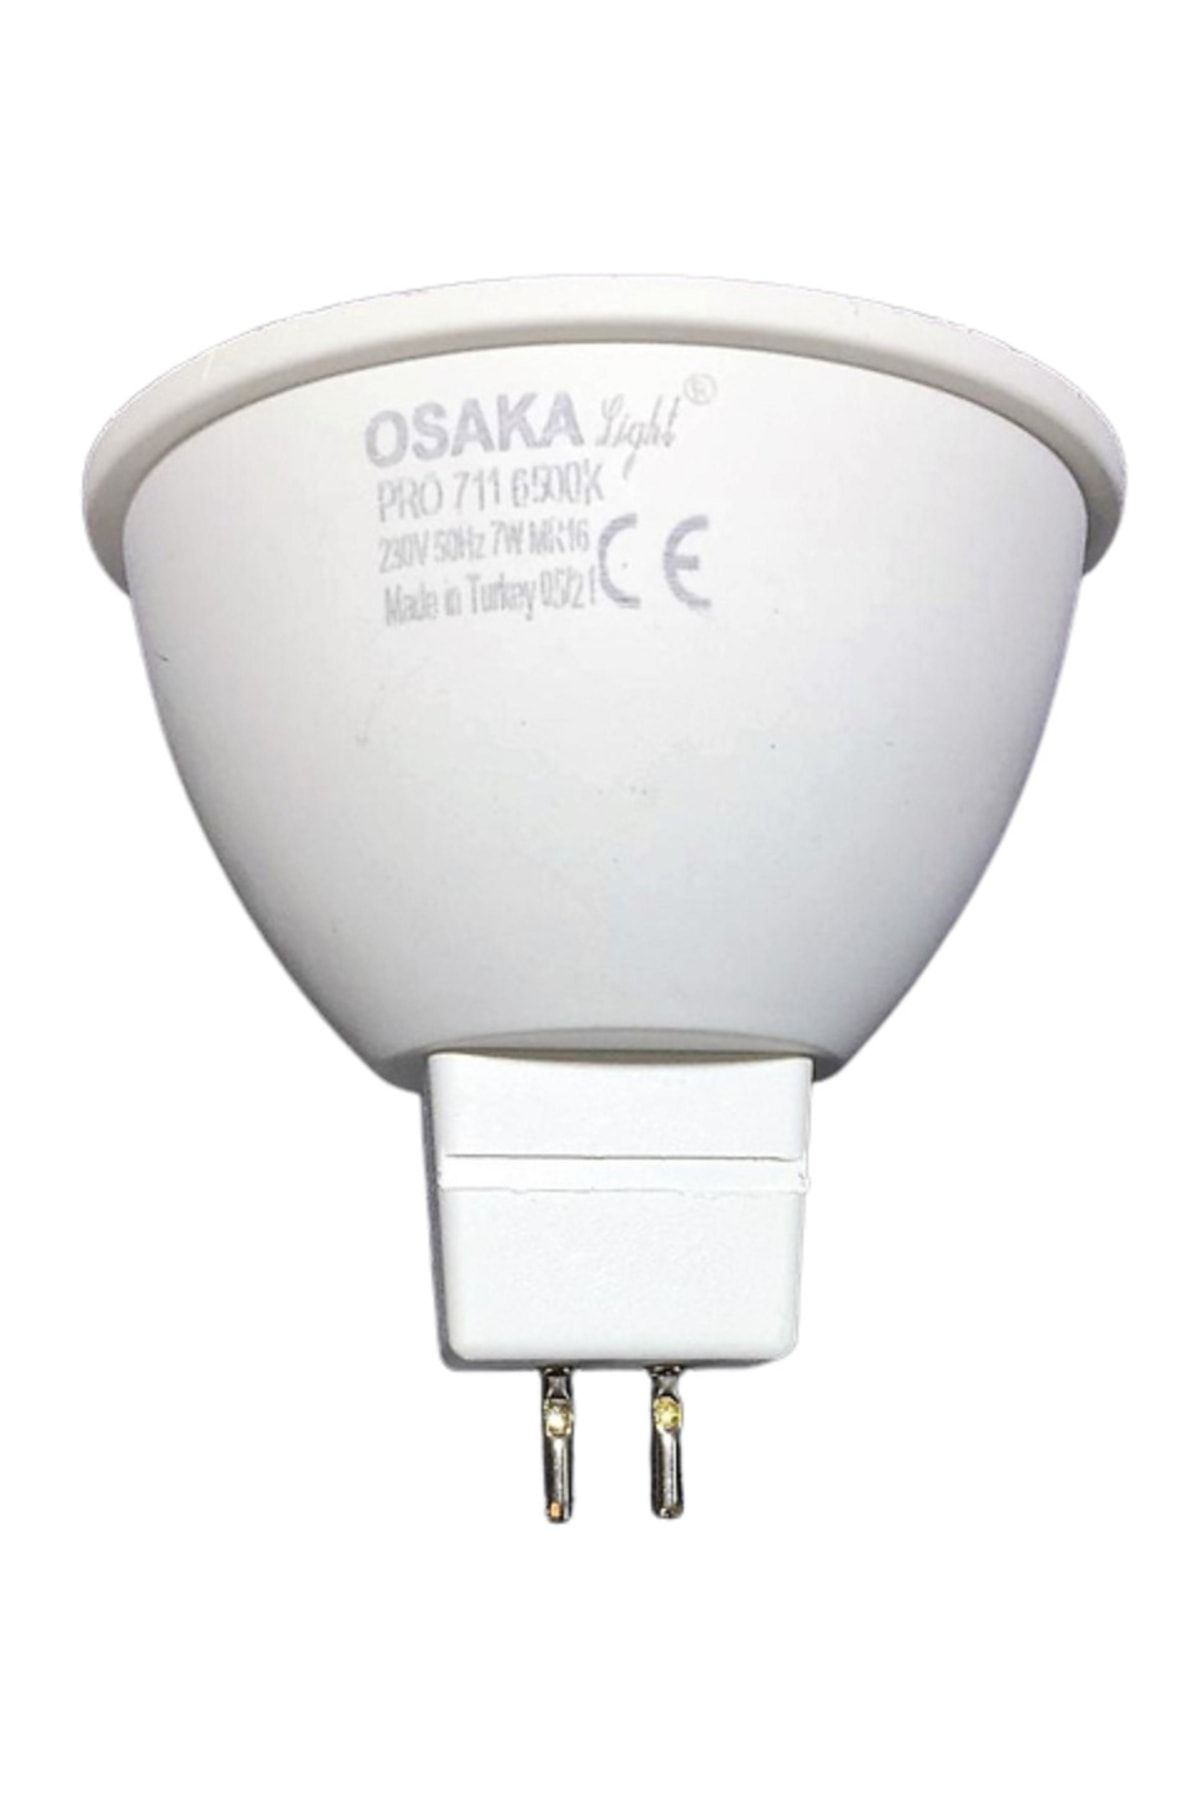 Osaka Light 7w Mr16 (gu5.3 ) Iğne Bacak Led Çanak Ampul Beyaz Işık 6500k Pro 711 Smd 220v